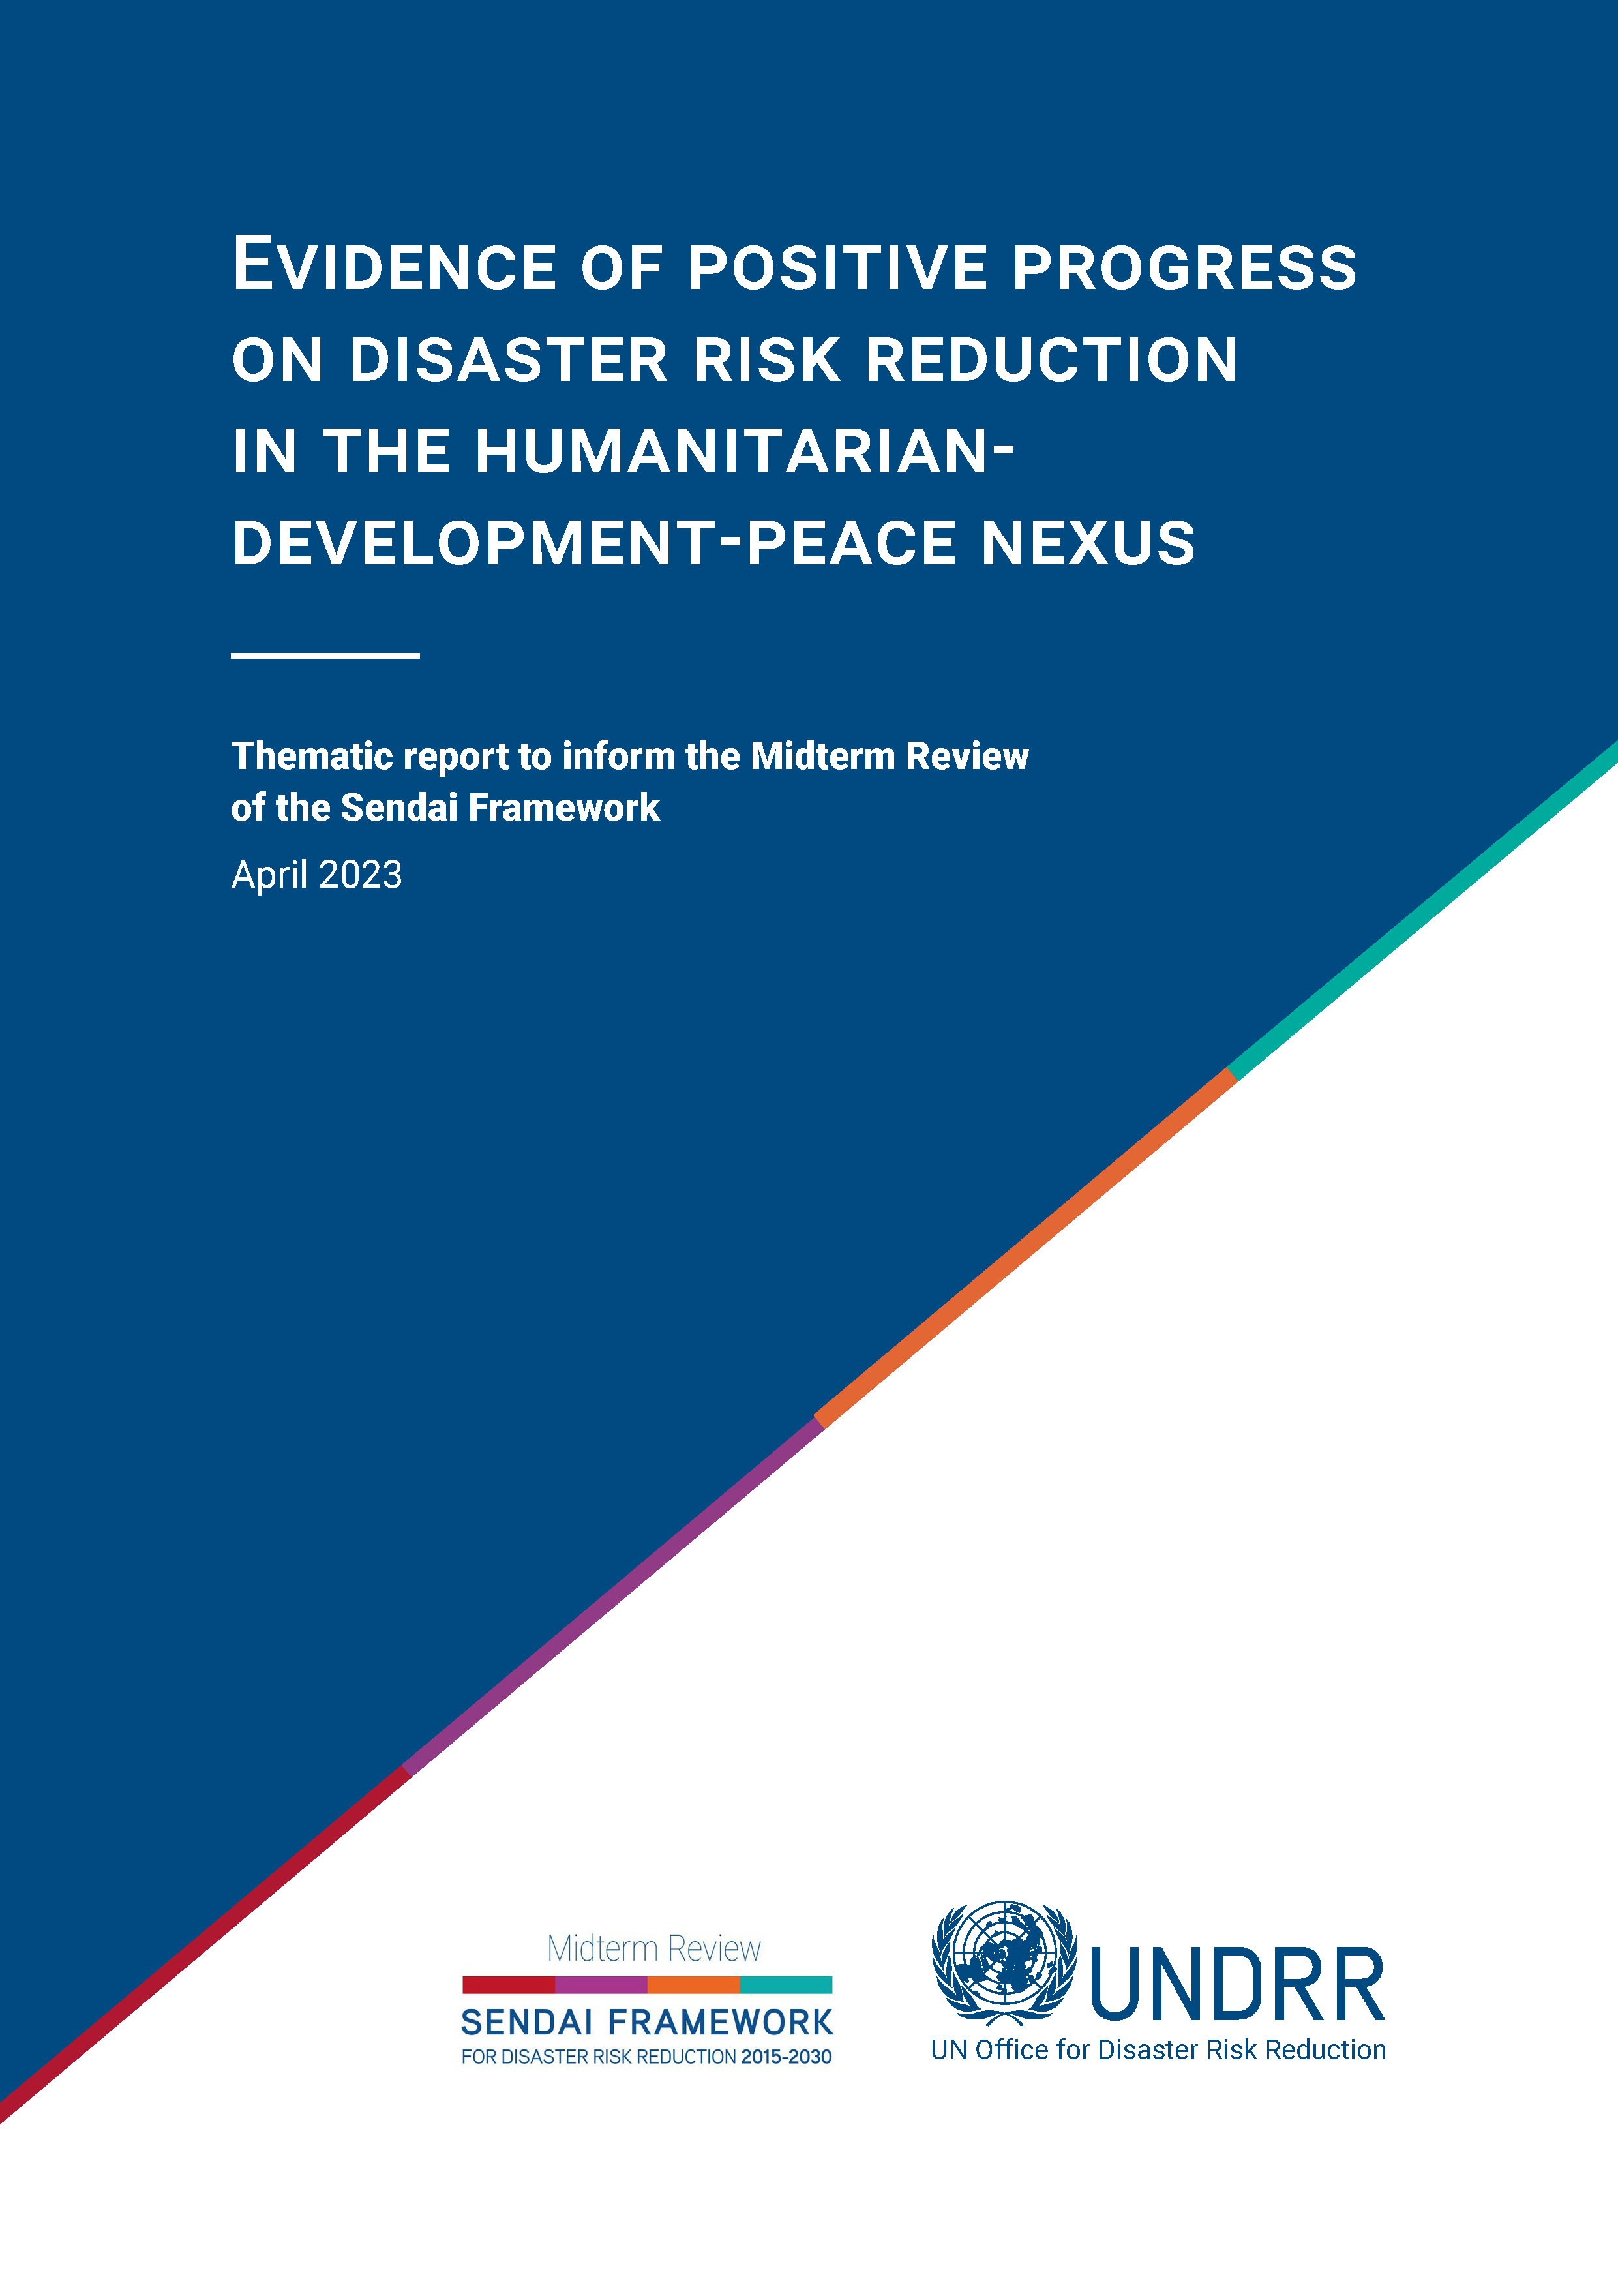 Page de couverture pour Preuves de progrès positifs en matière de réduction des risques de catastrophe dans le cadre du lien humanitaire-développement-paix